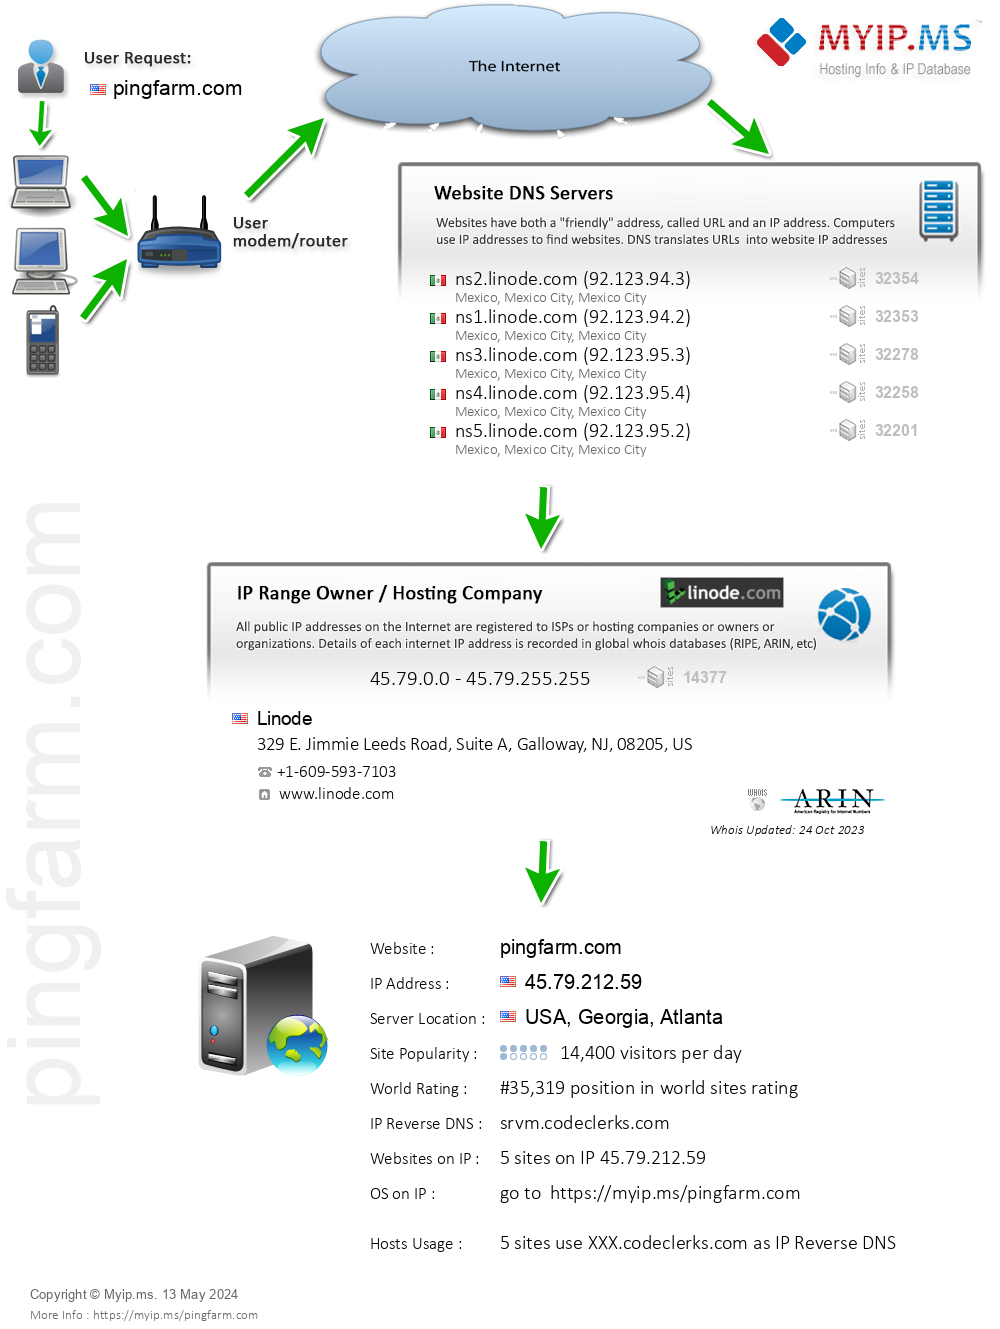 Pingfarm.com - Website Hosting Visual IP Diagram